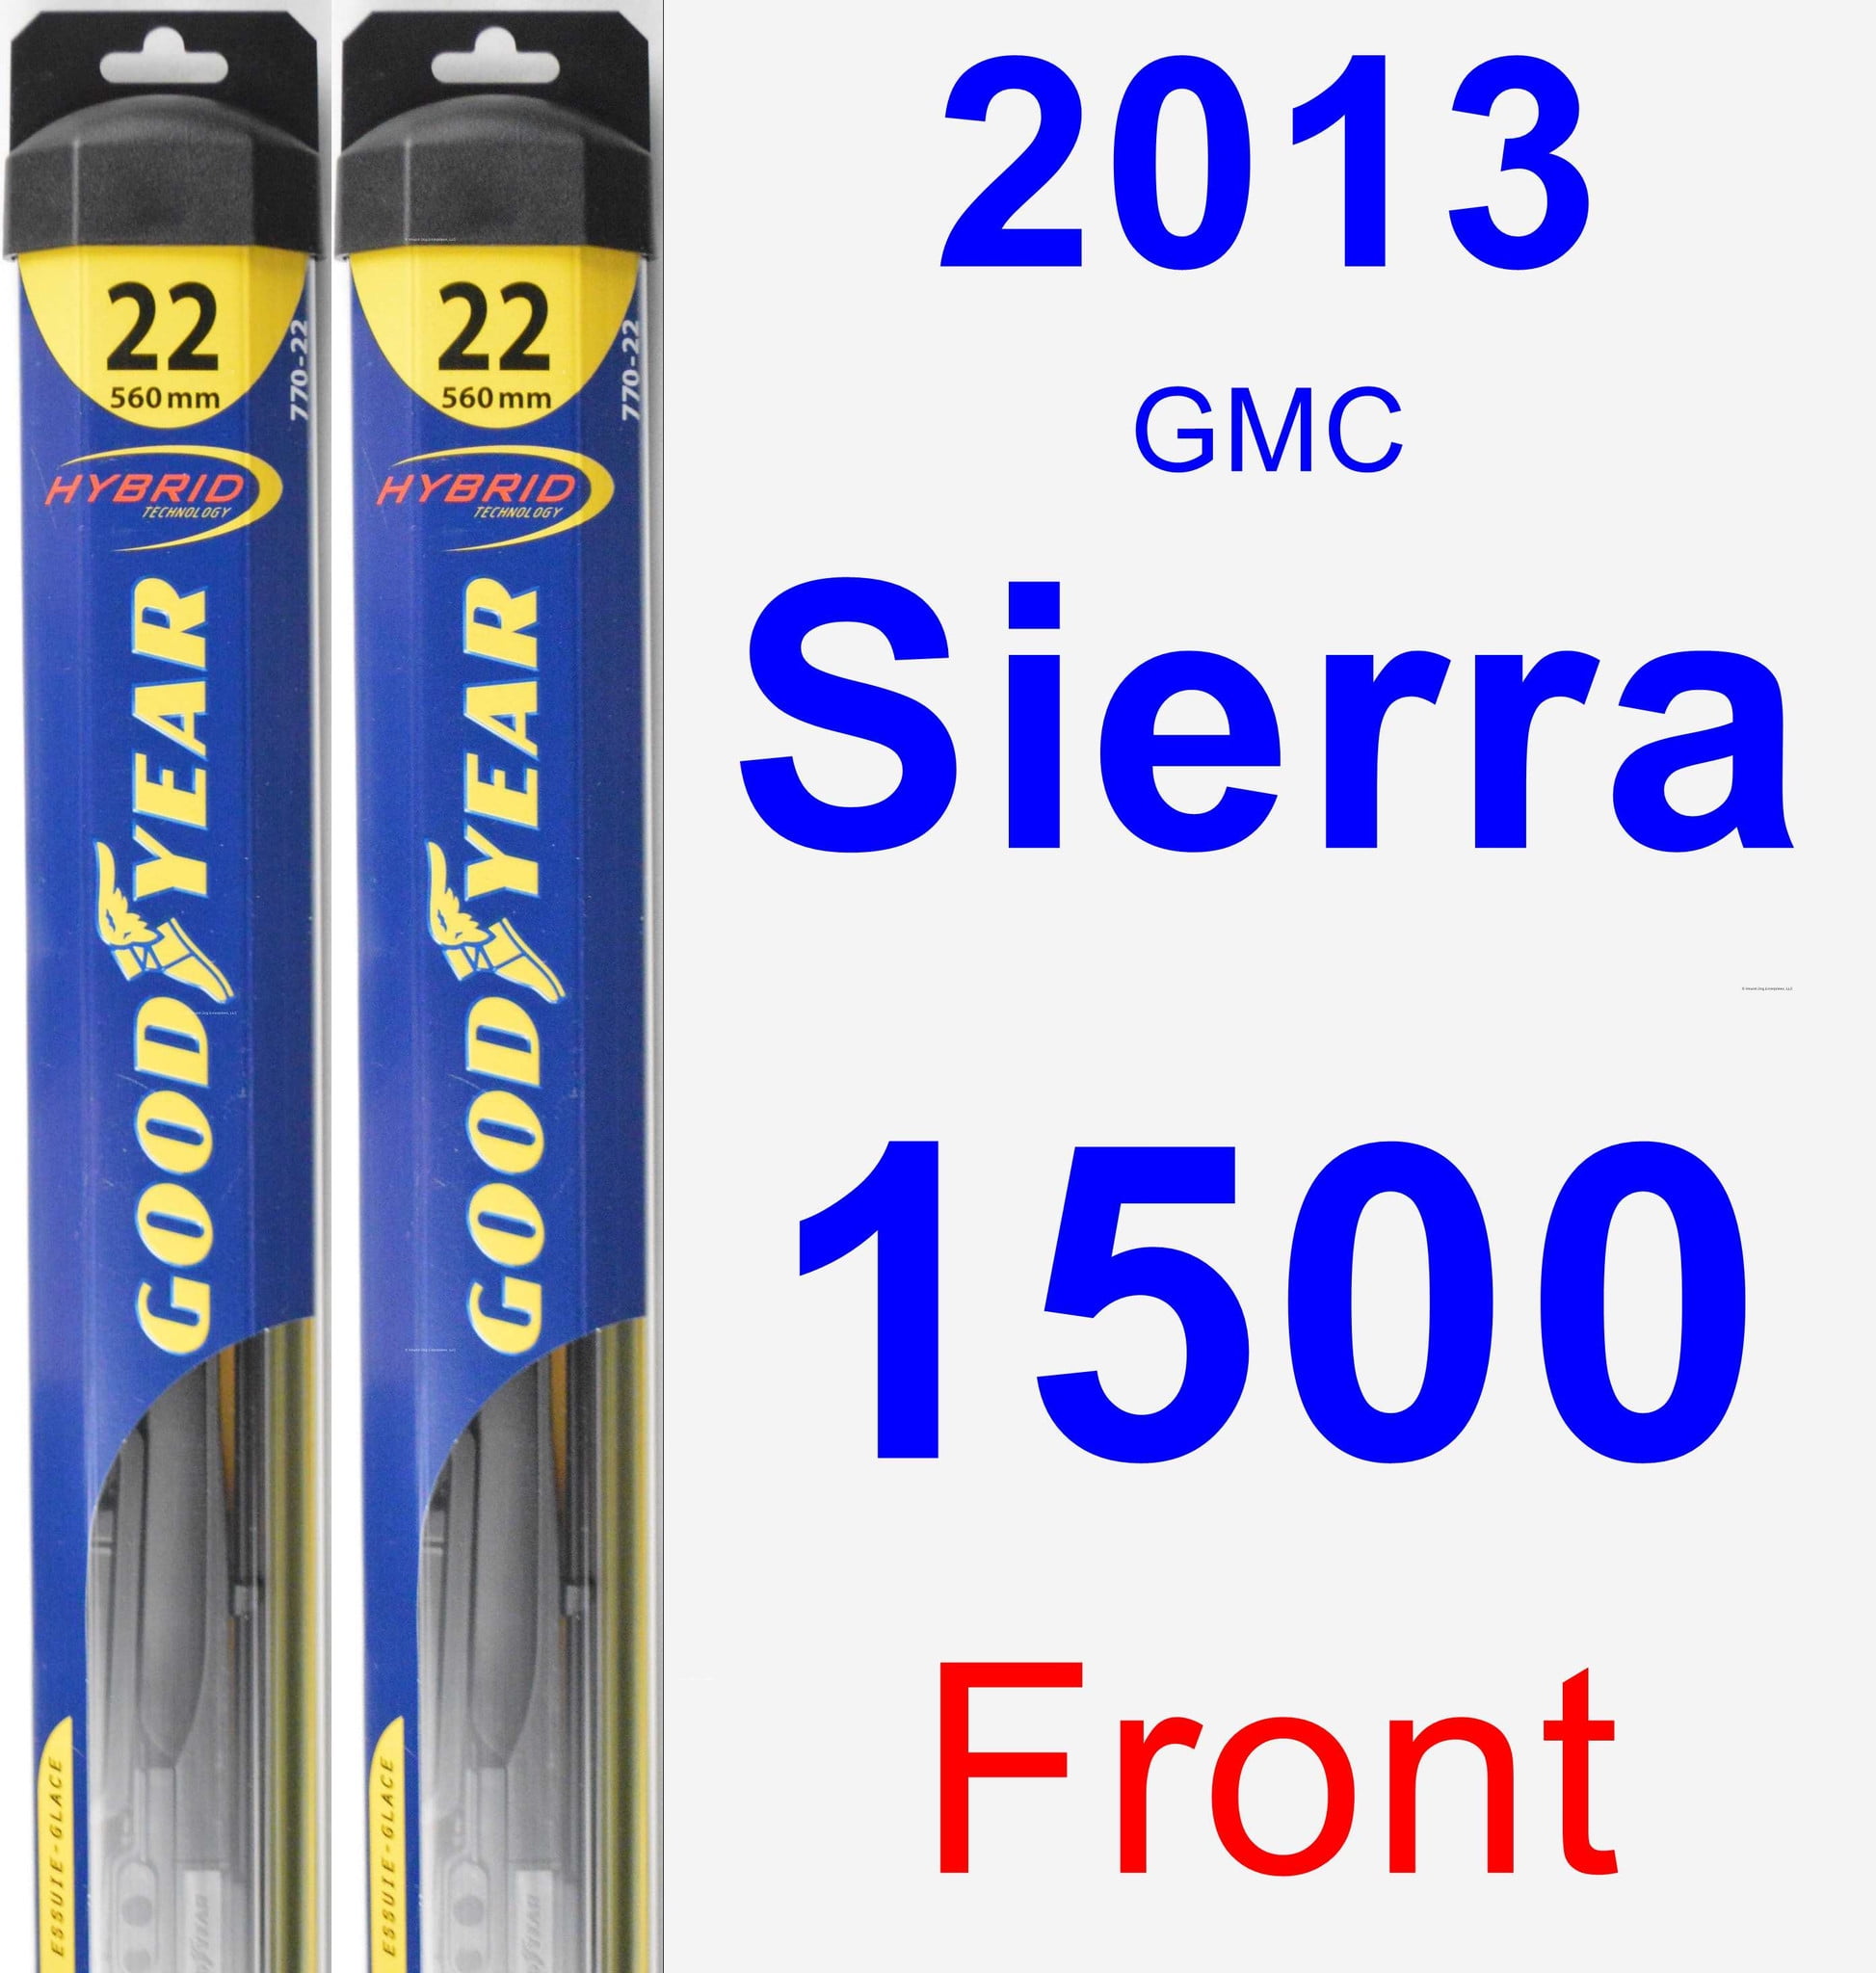 2013 GMC Sierra 1500 Wiper Blade Set/Kit (Front) (2 Blades) - Hybrid - Walmart.com - Walmart.com 2013 Gmc Sierra 1500 Wiper Blade Size